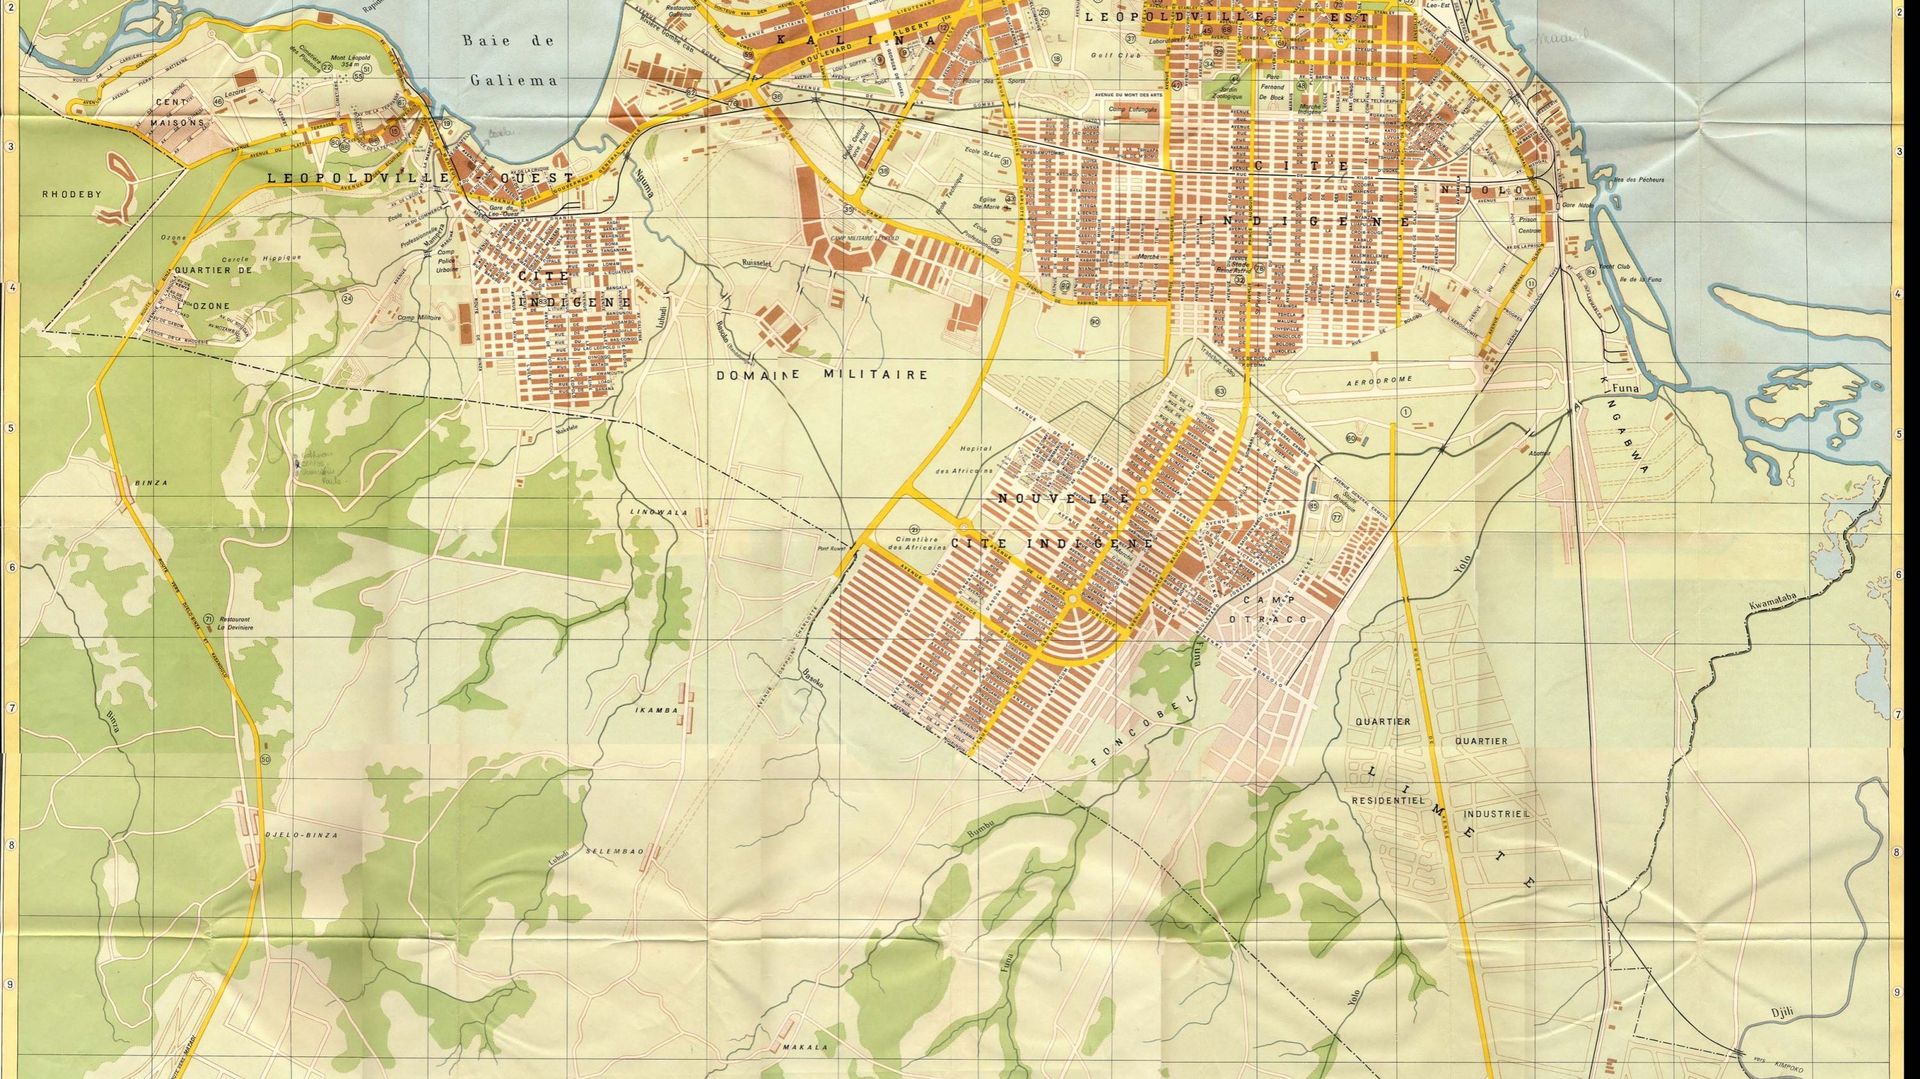 Plans de Léopoldville, 1954 : au nord de la ville, (en brun foncé) la ville blanche, au sud, (en brun clair) la cité noire et ses rues en quadrillages. Entre les deux, le no man’s land, la « zone verte » qui sépare les deux parties de la ville, avec le gr